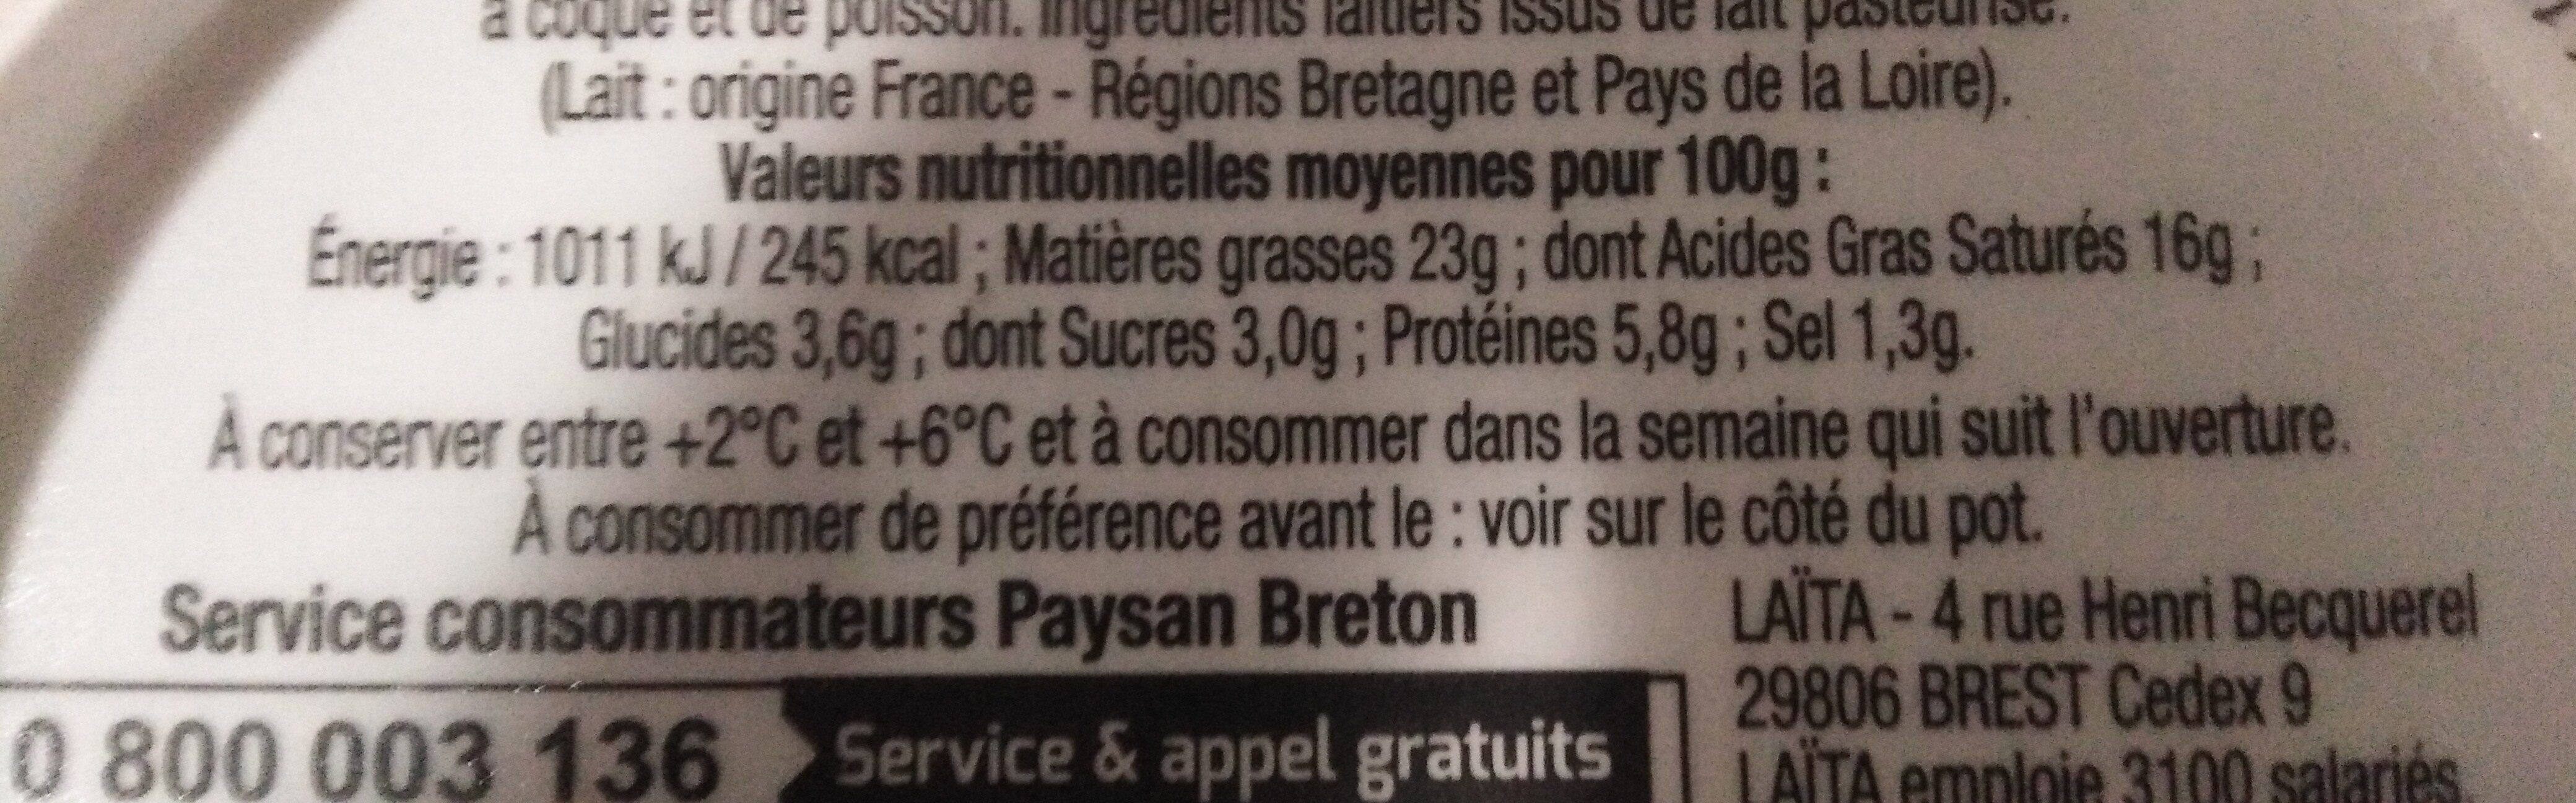 Paysan Breton - Le Fromage Fouetté Madame Loïk - Ail et fines herbes de nos régions françaises - Tableau nutritionnel